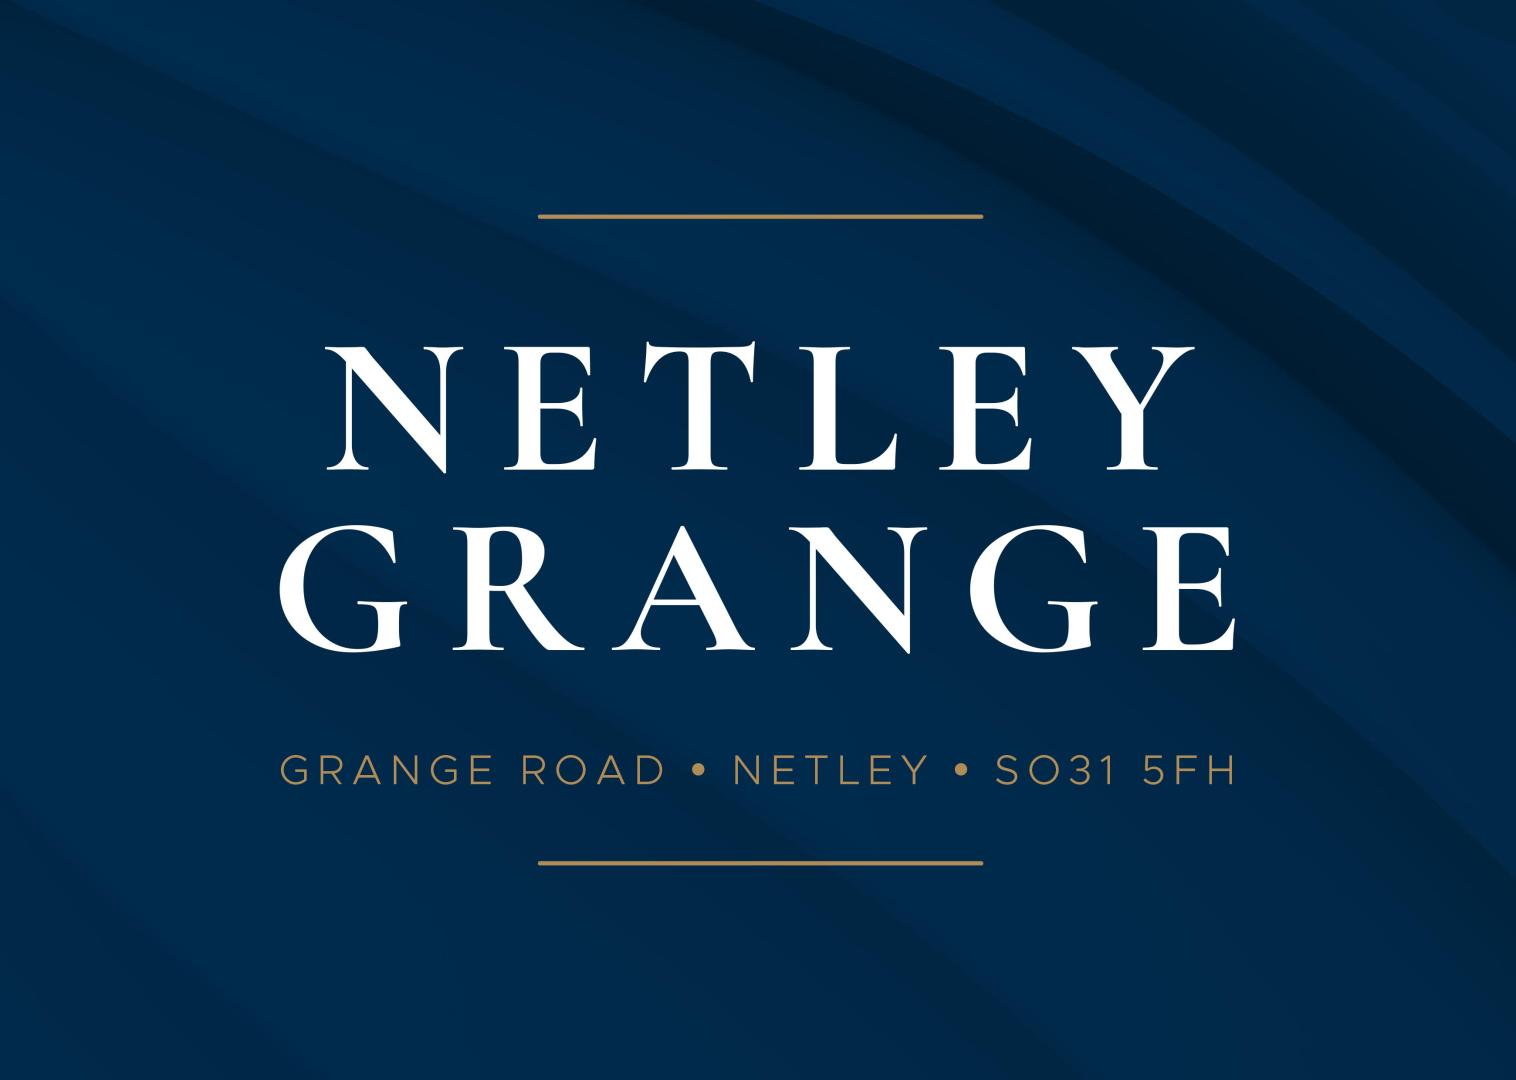 Netley Grange